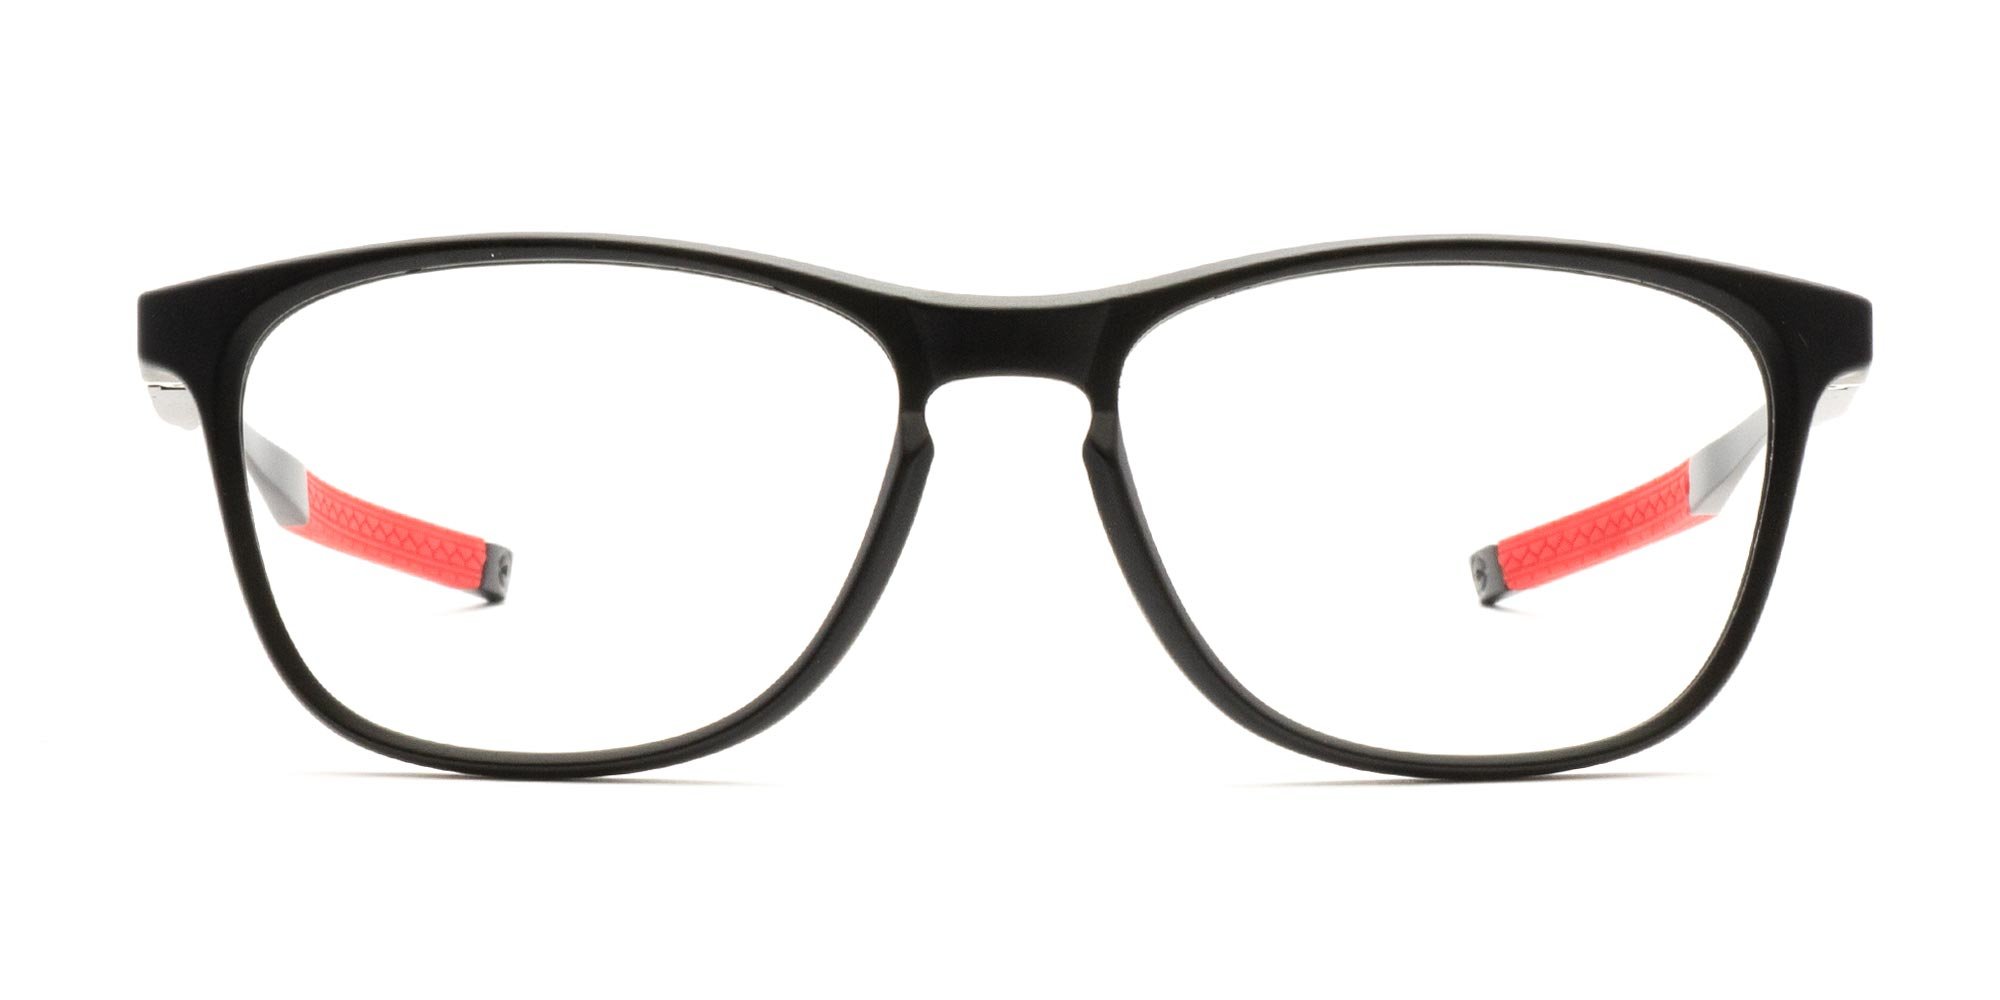 Football Glasses Frames-1